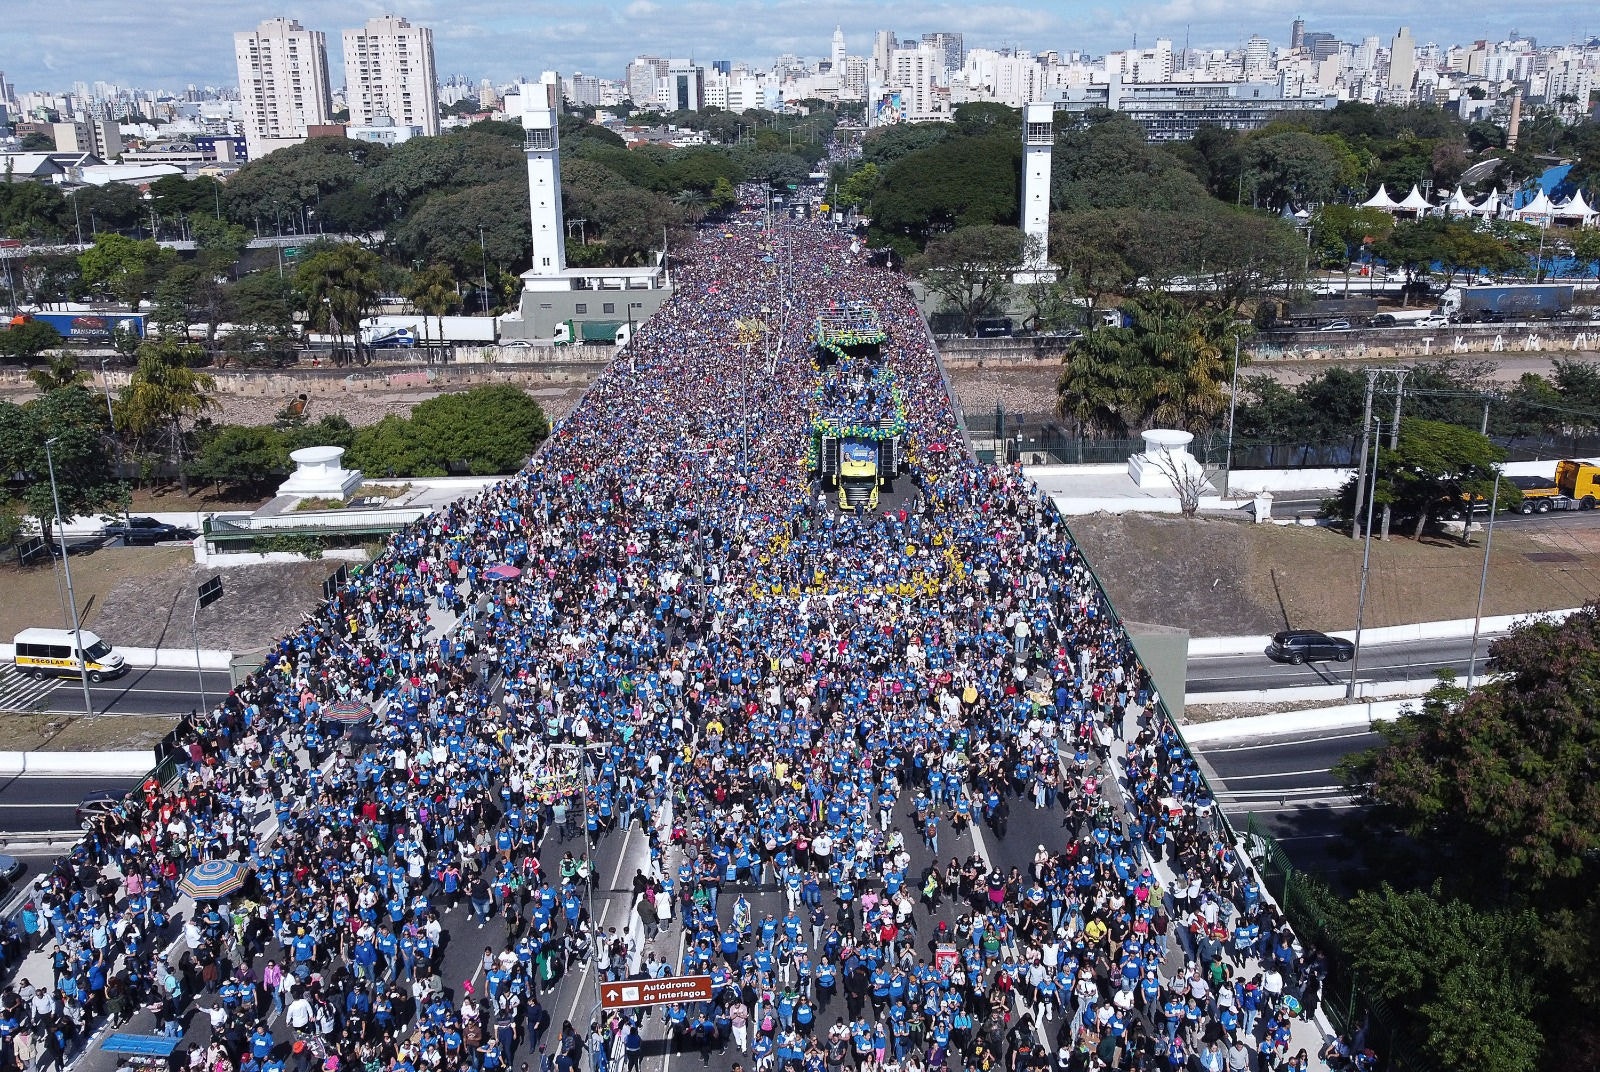 A organização do evento, comandada pela Igreja Renascer, afirma ter recebido 17 mil caravanas de diversas regiões do Brasil e do exterior